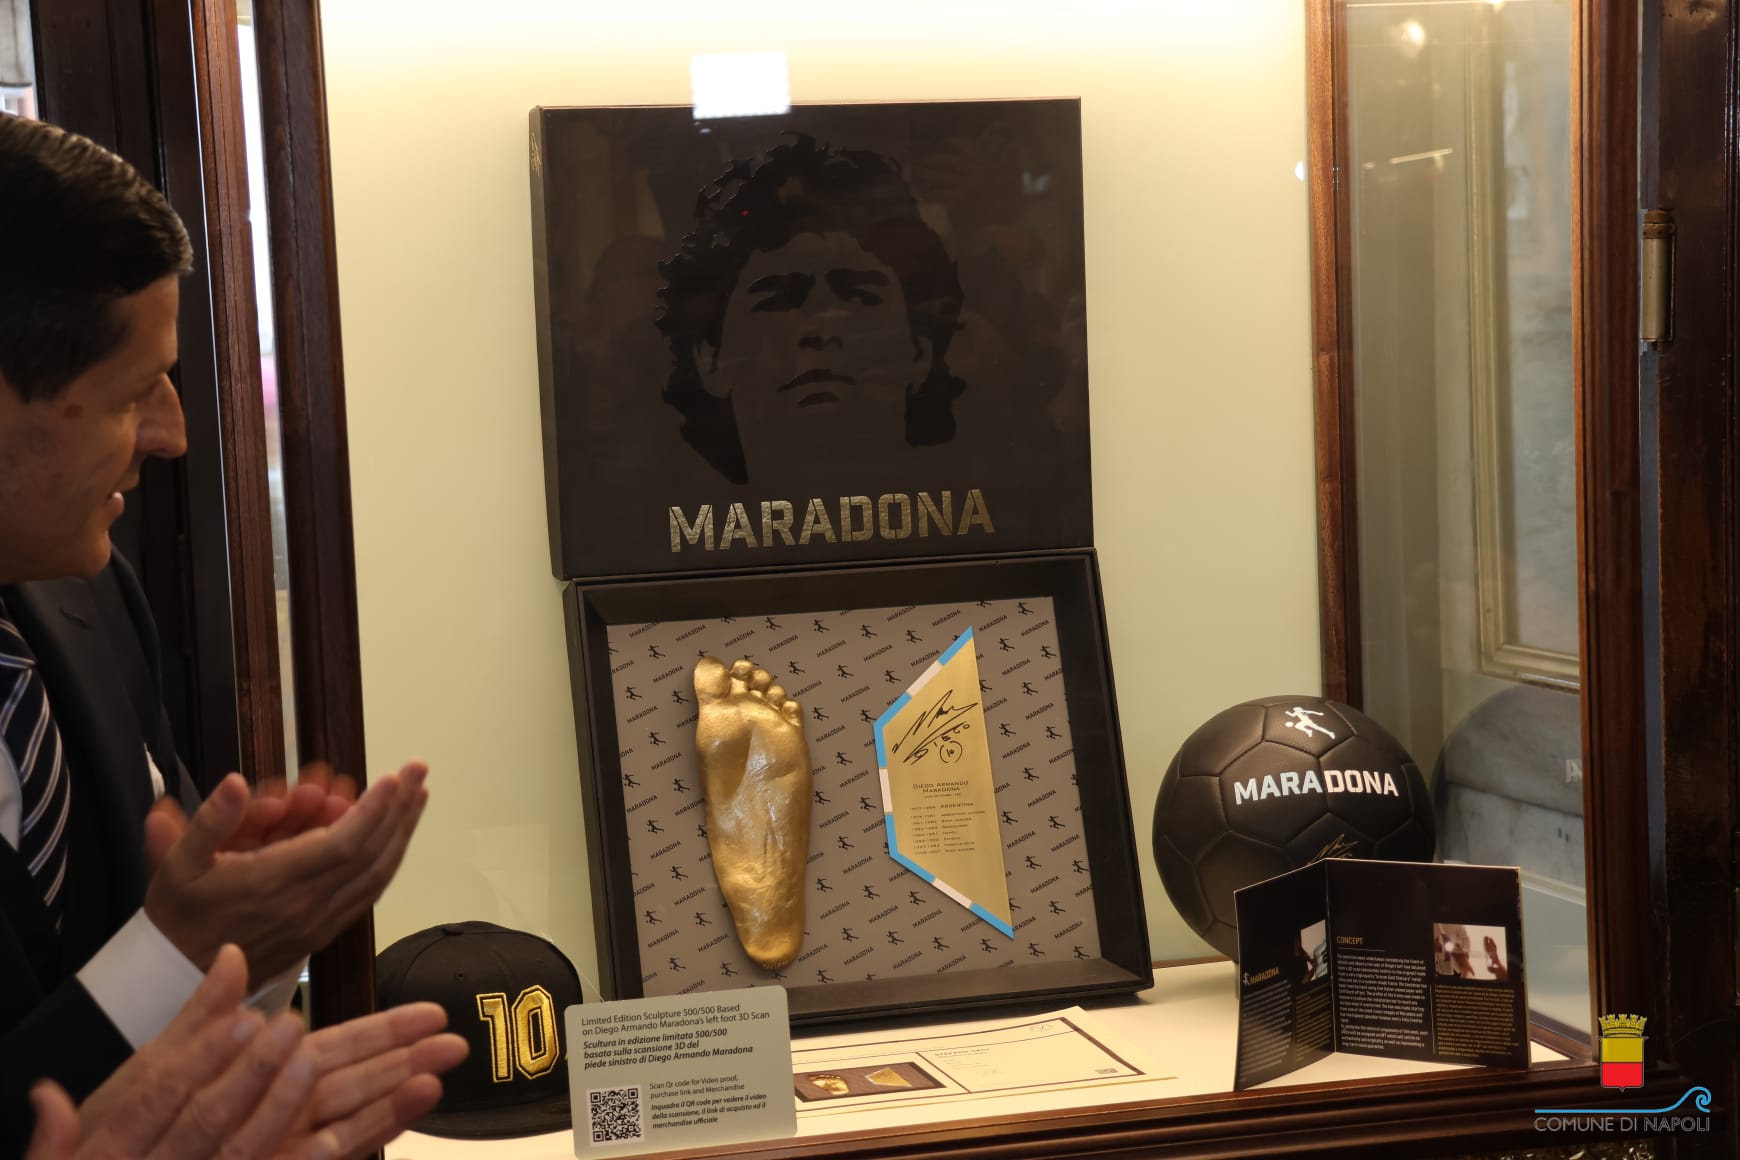 Maradona, al caffè Gambrinus il calco del piede sinistro